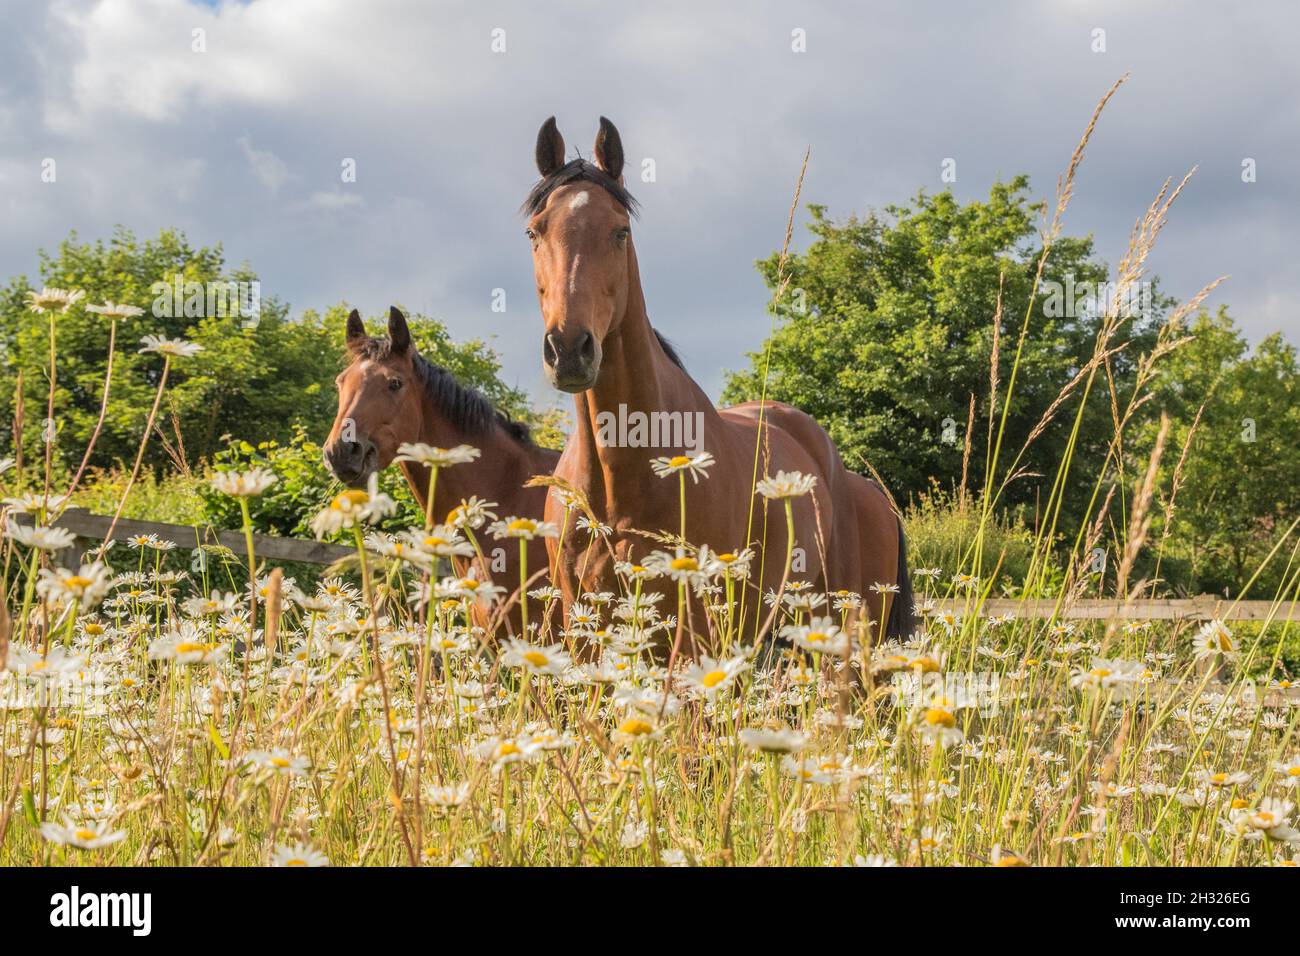 Dans la prairie de fleurs sauvages, Une paire de chevaux intelligents de baie assortis appréciant le pâturage dans une prairie de fleurs sauvages.Suffolk , Royaume-Uni Banque D'Images